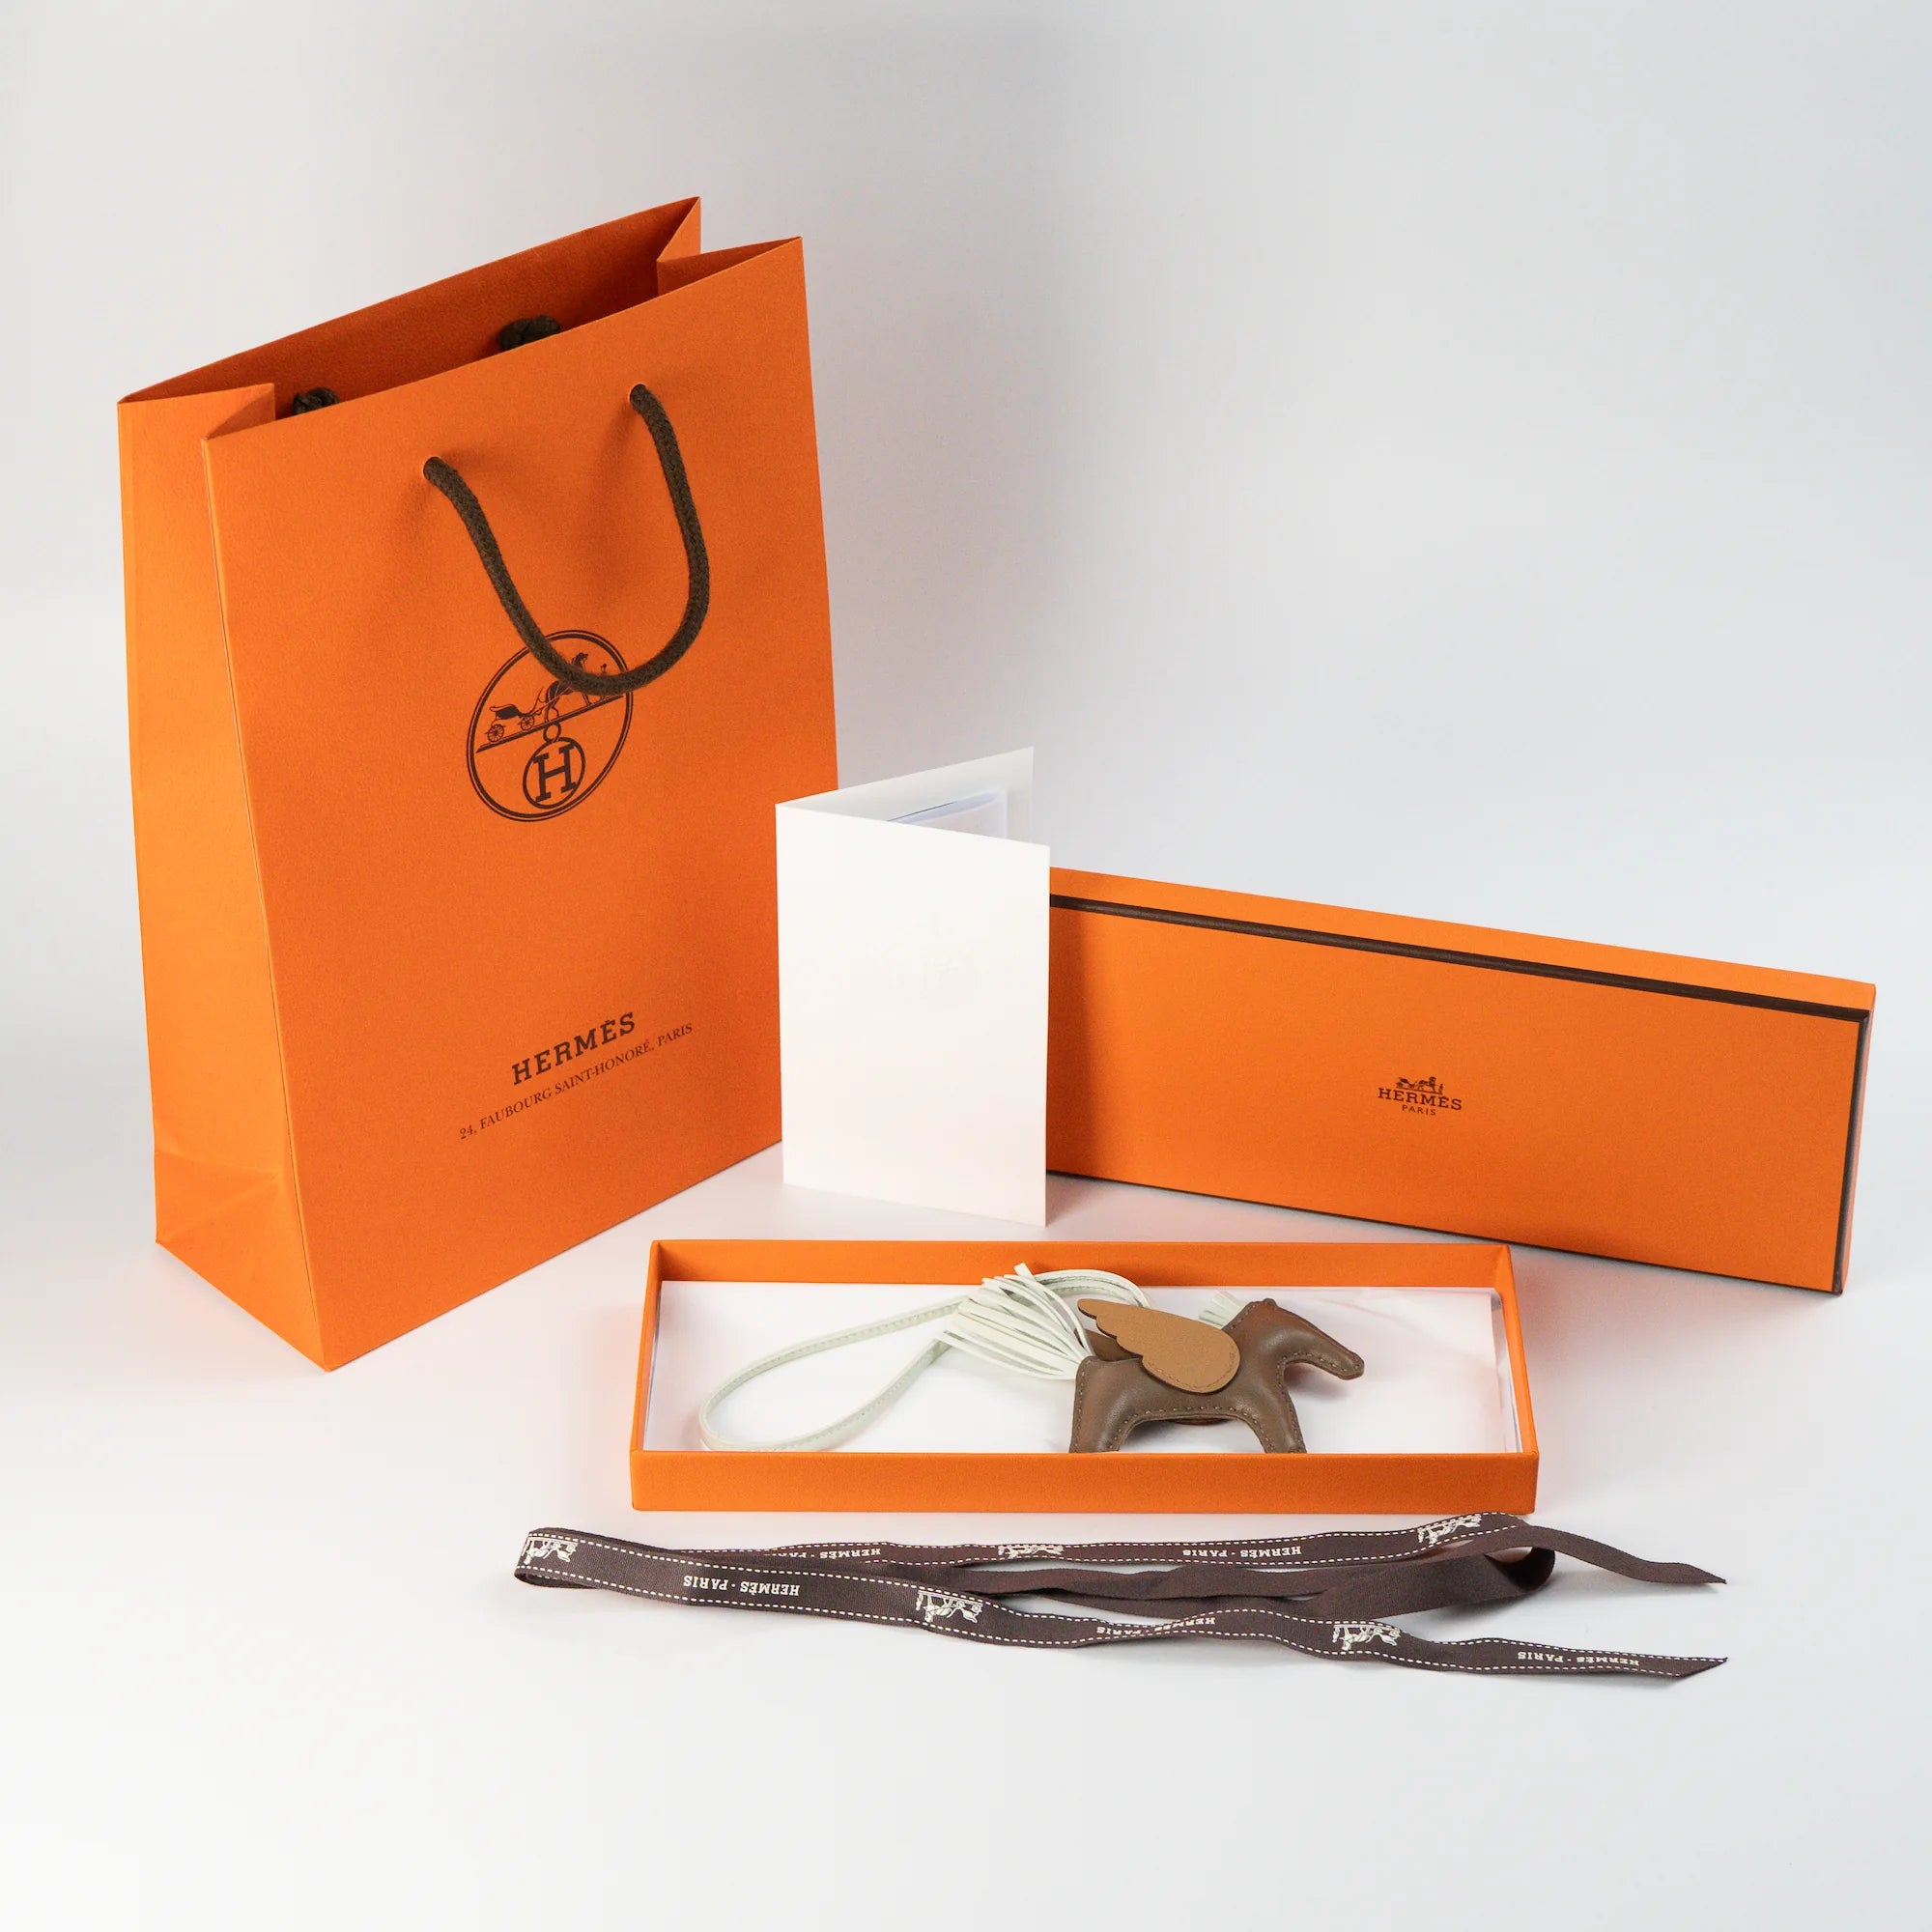 Hermès Tachenaccessoires "Rodeo Pegase MM" mit braunem und türkisem Leder zusammen mit dem Lieferumfang bestehend aus der orangen Verpackung und Papieren